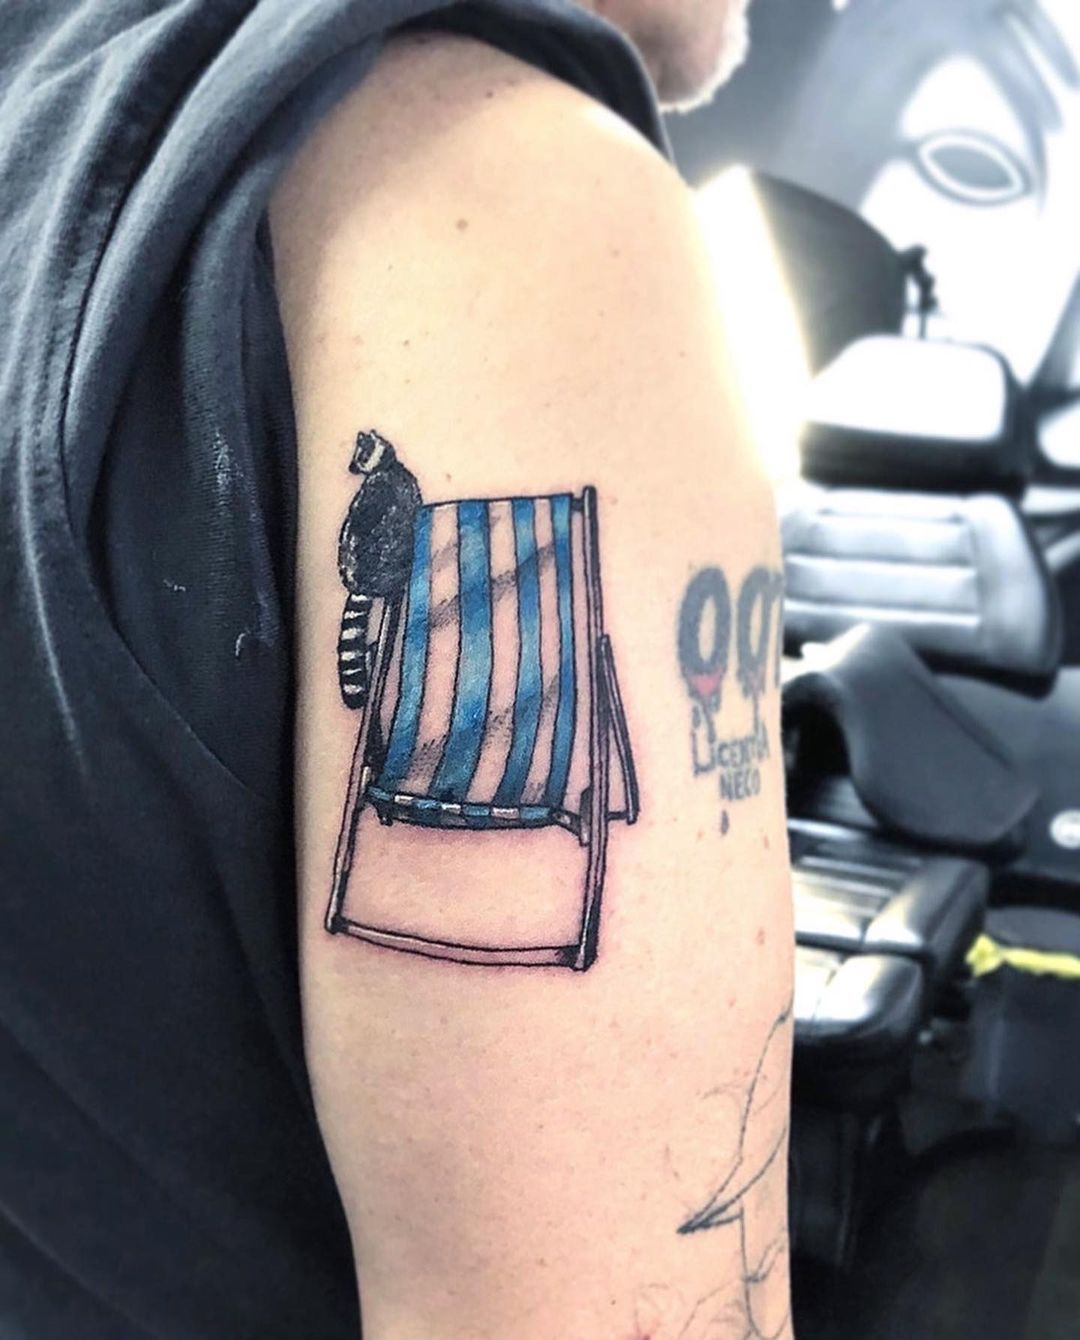 Chair arm tattoo